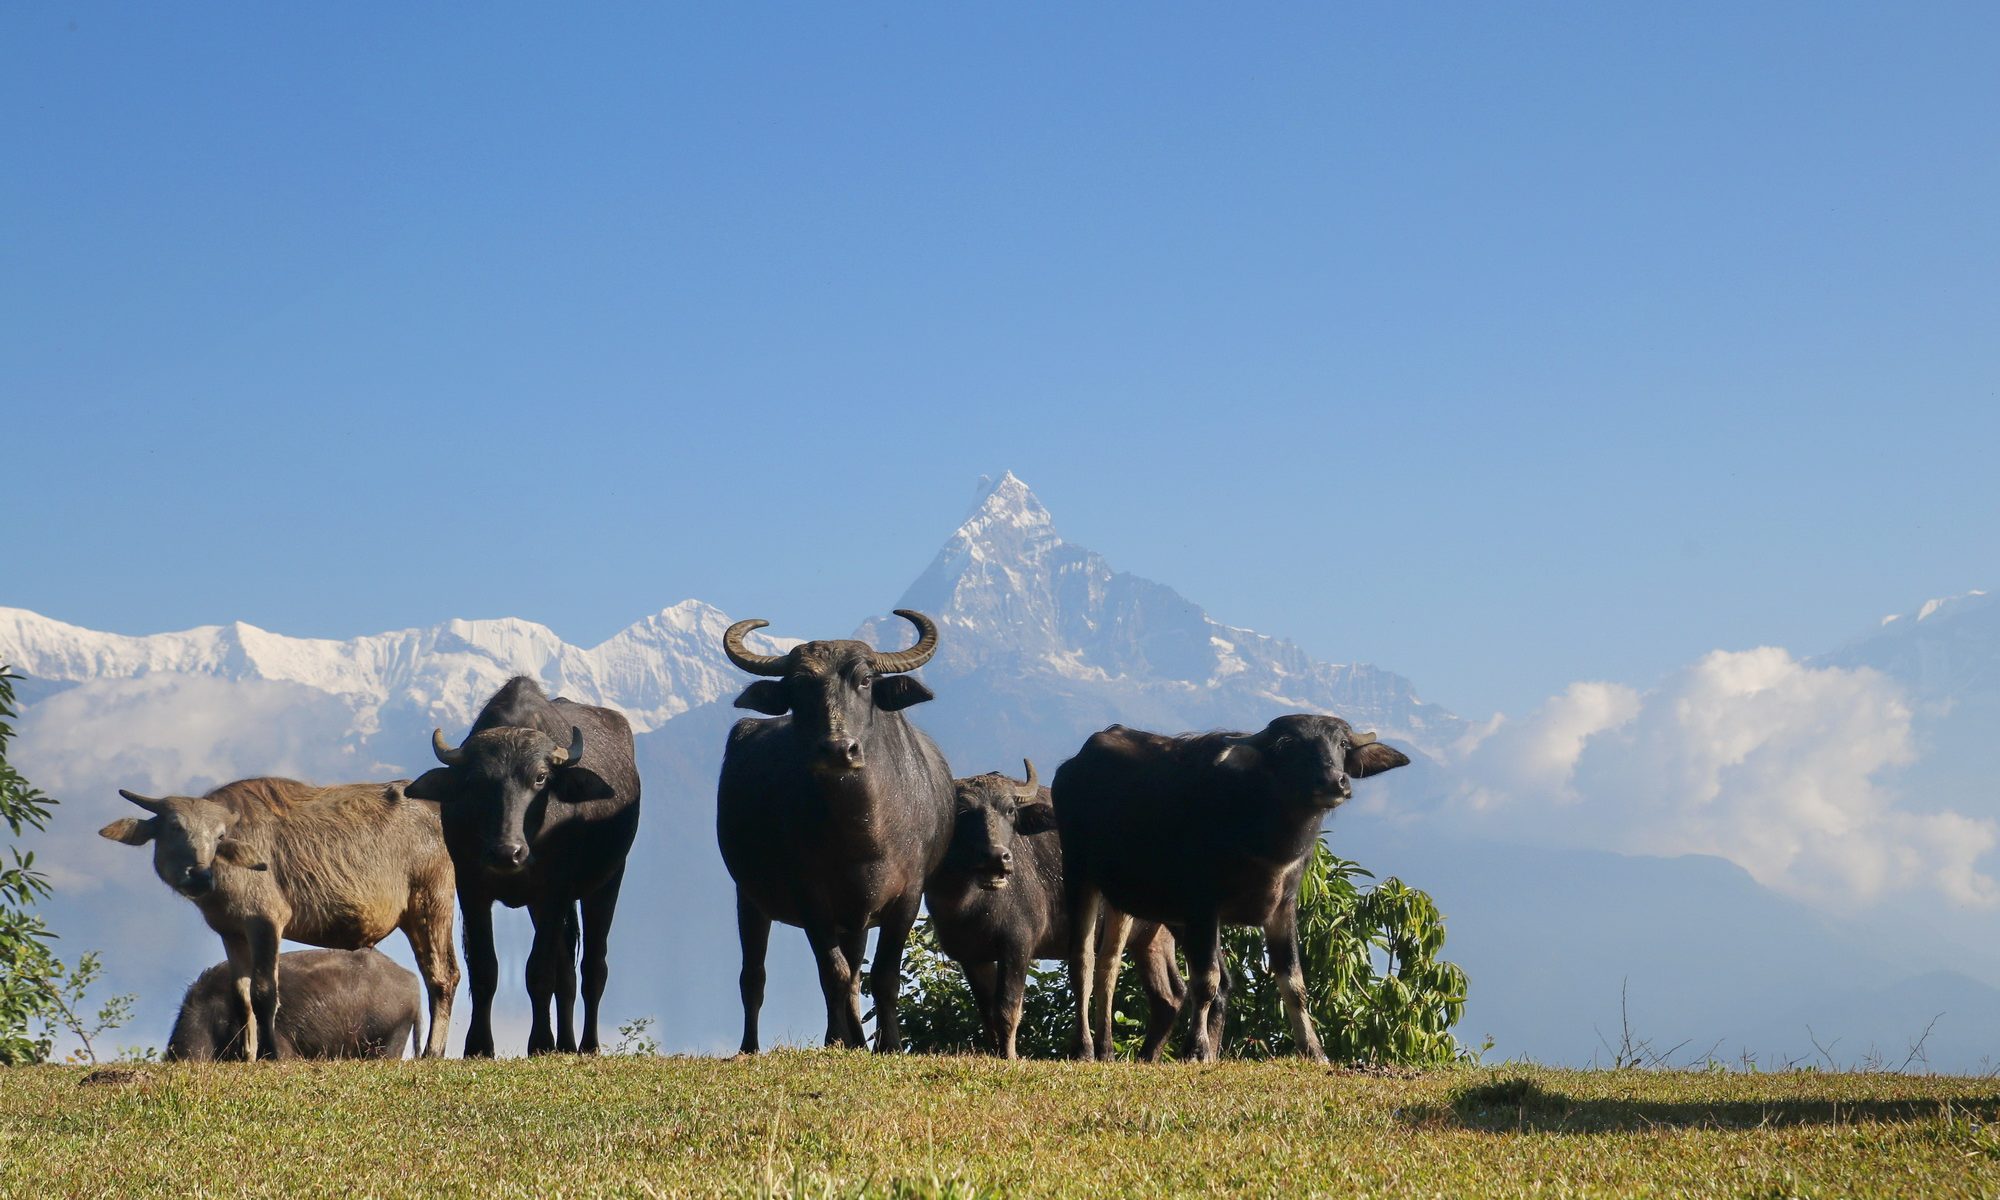 Buffalos under mountains at Panchase